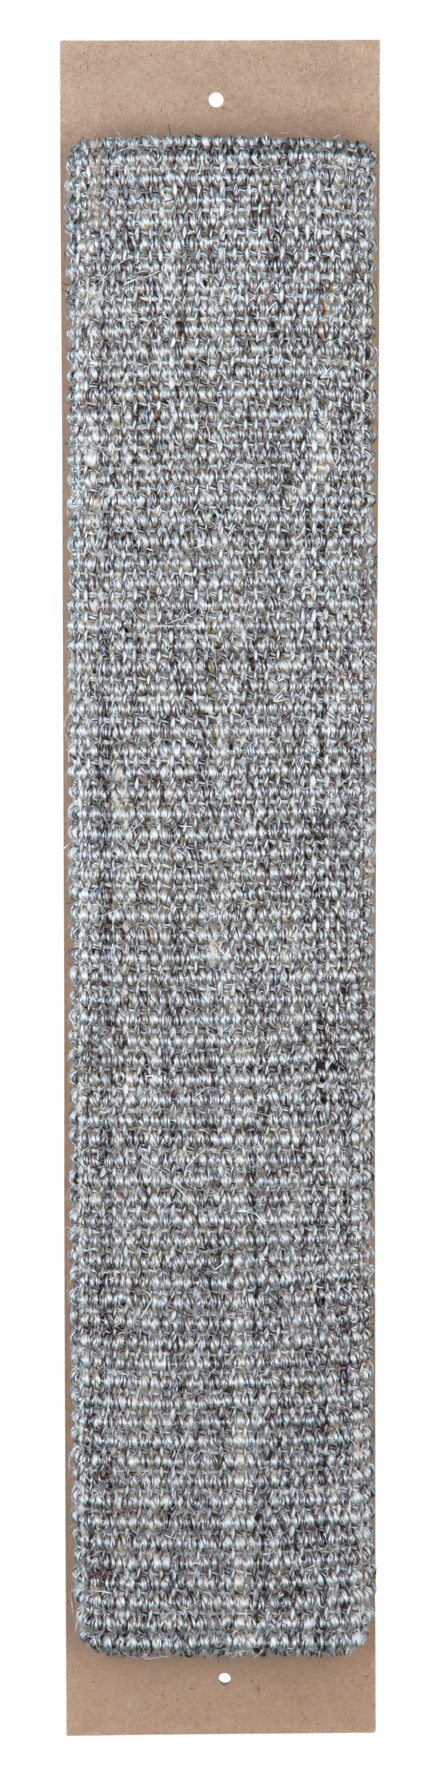 43182 Scratching board, 11 x 60 cm, grey